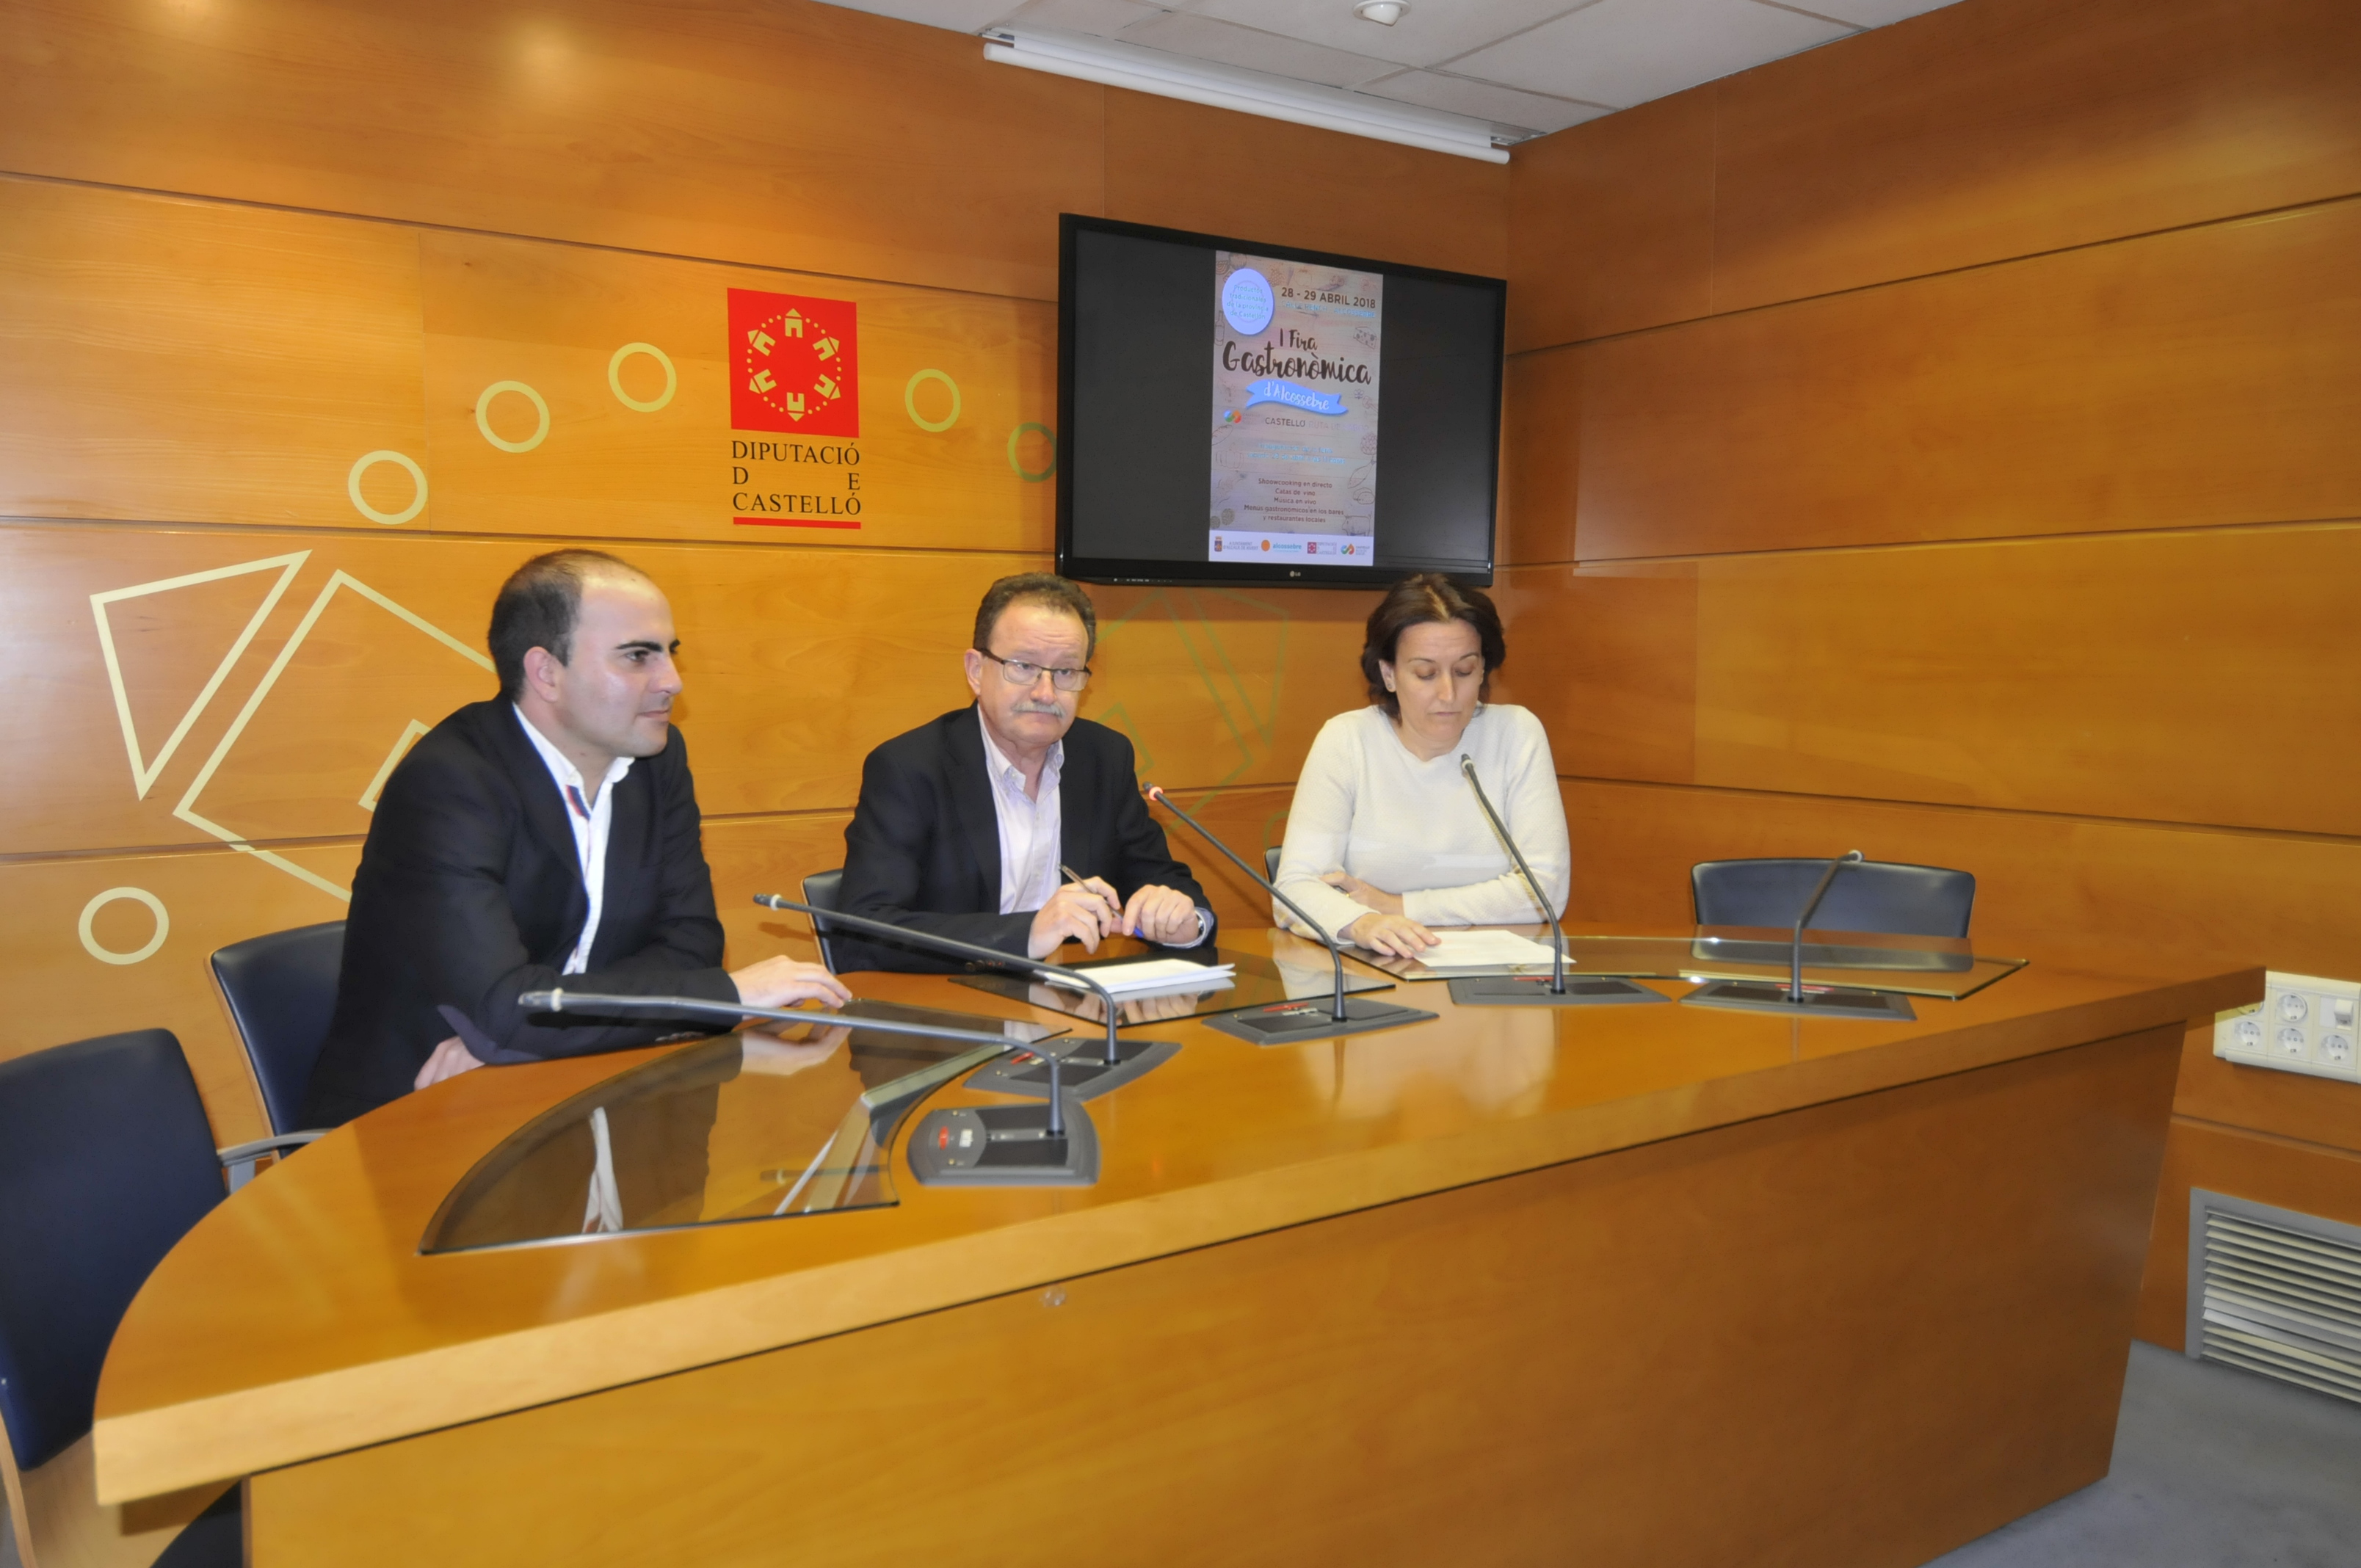 La Diputación de Castellón impulsa el turismo gastronómico en Alcalà de Xivert con la I Fira Gastronòmica Castelló Ruta de Sabor